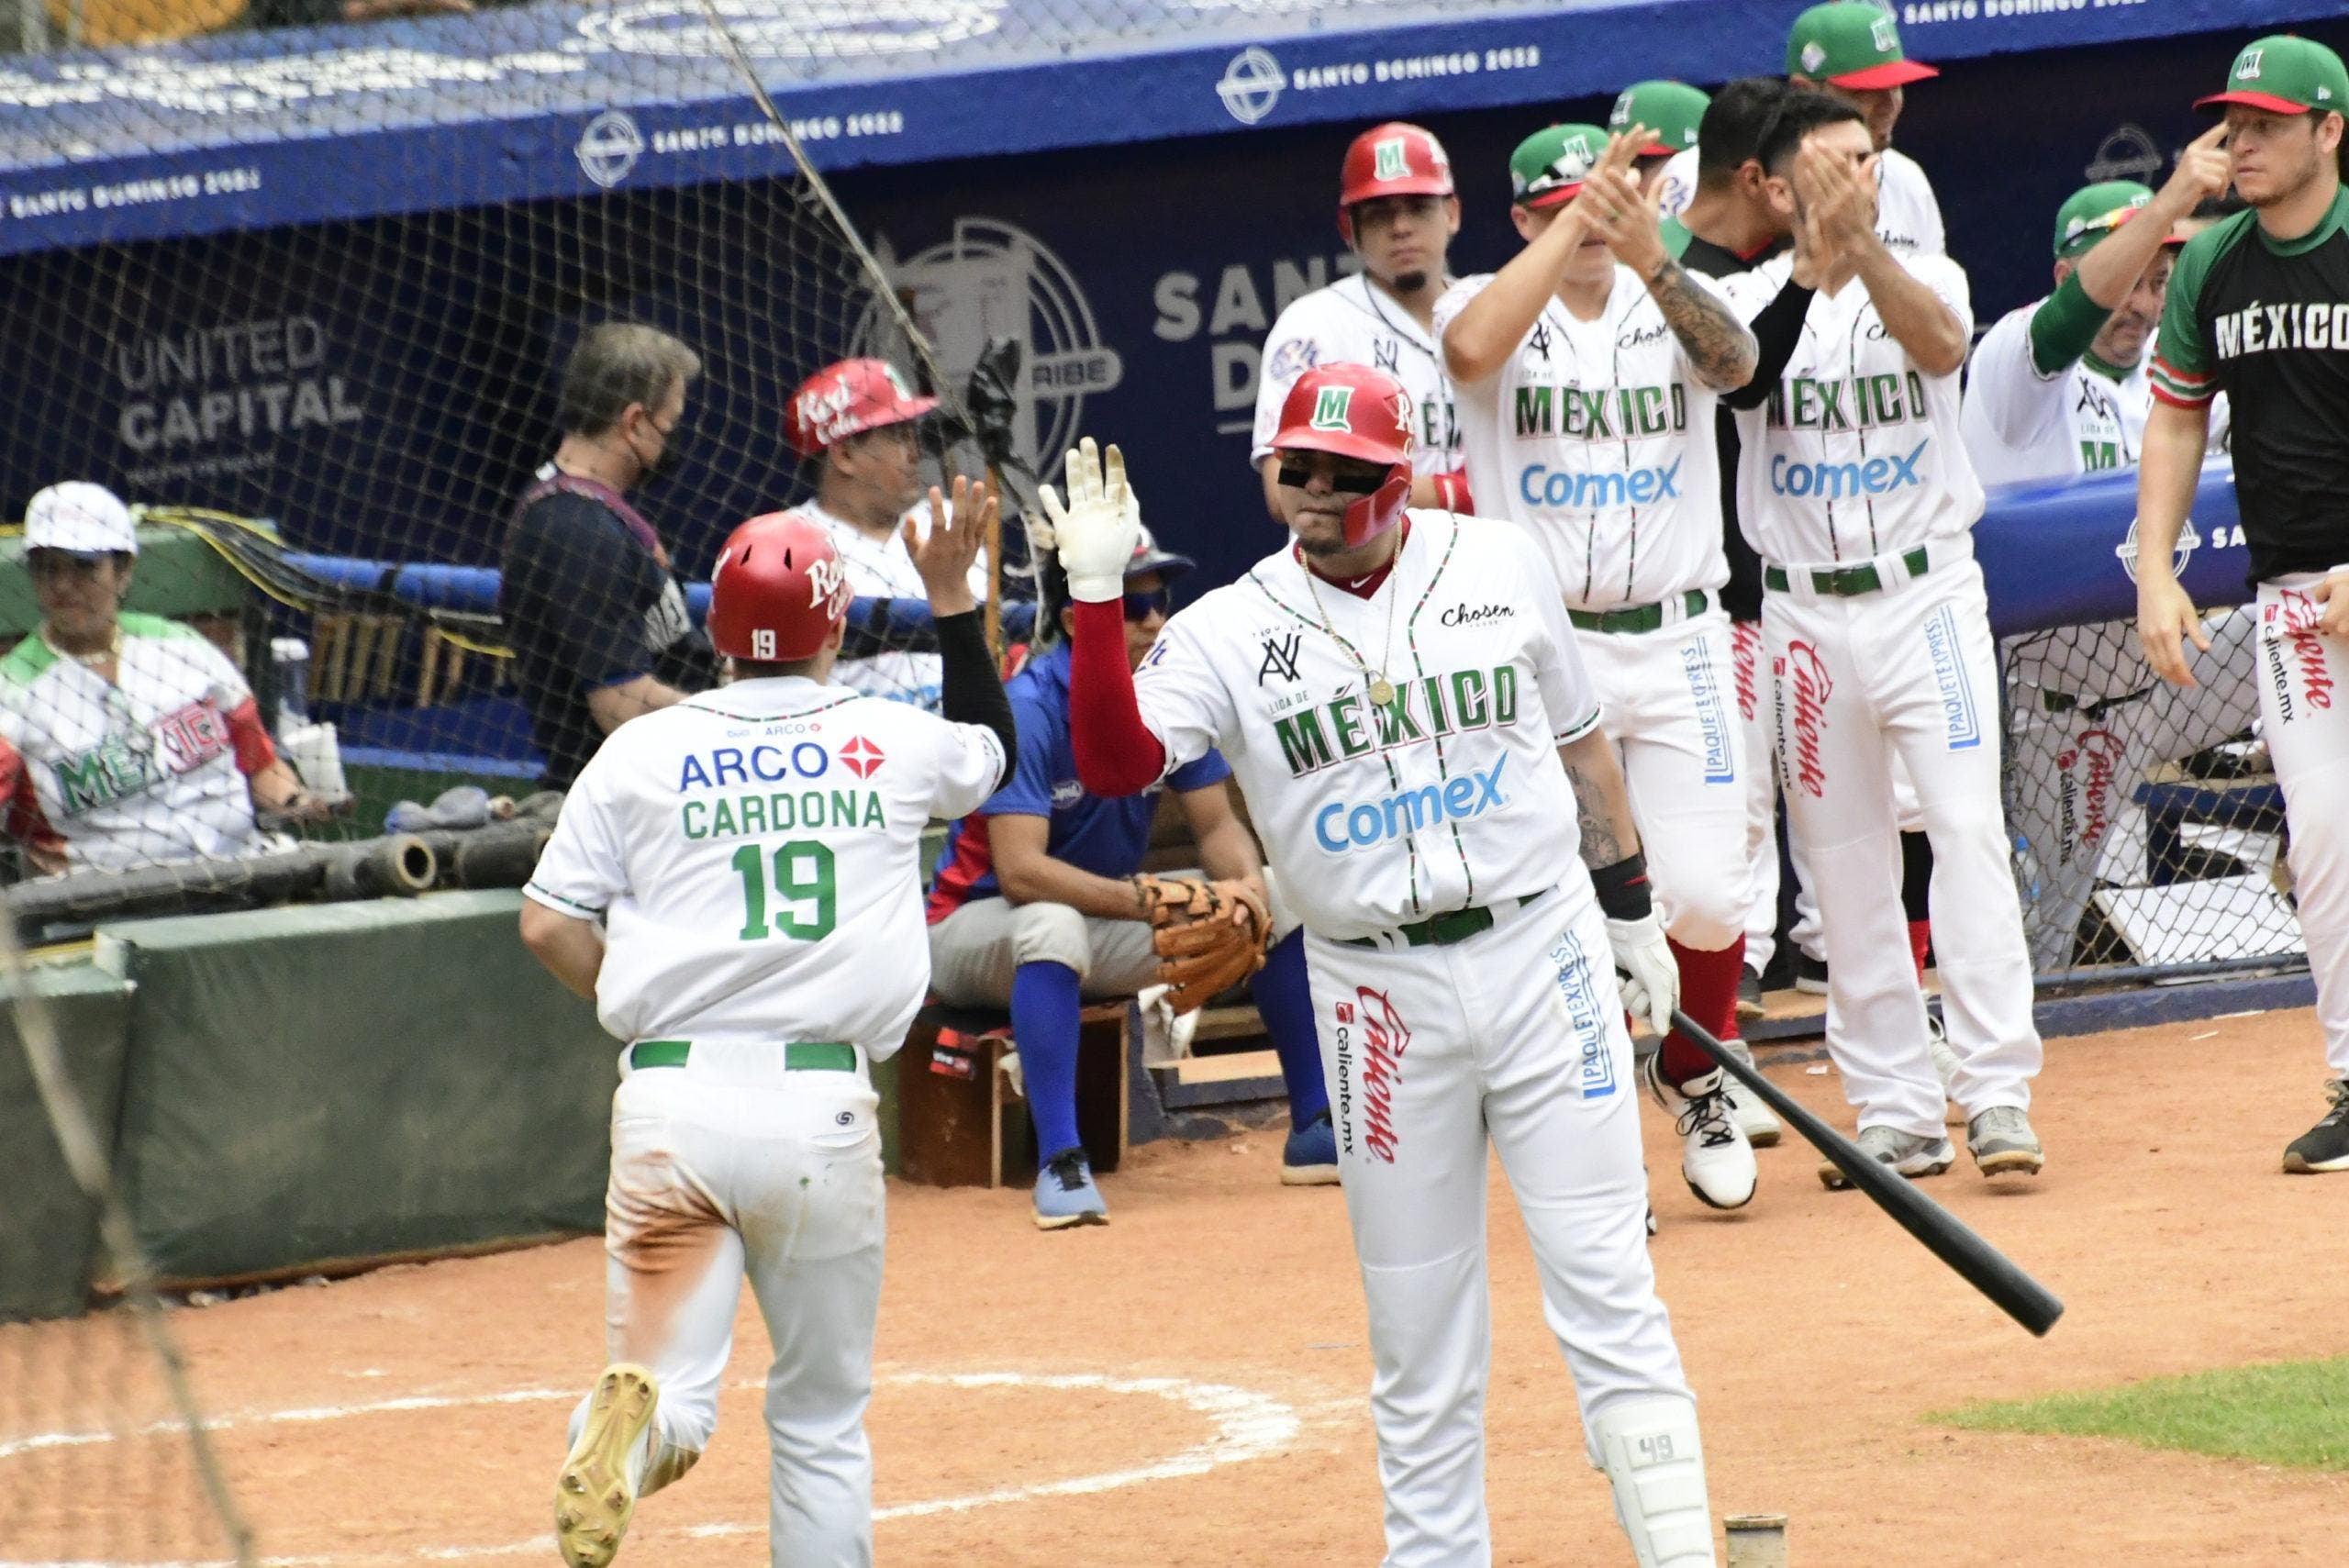 México blanquea a Panamá 1-0 y clasifica a semifinales de la Serie del Caribe